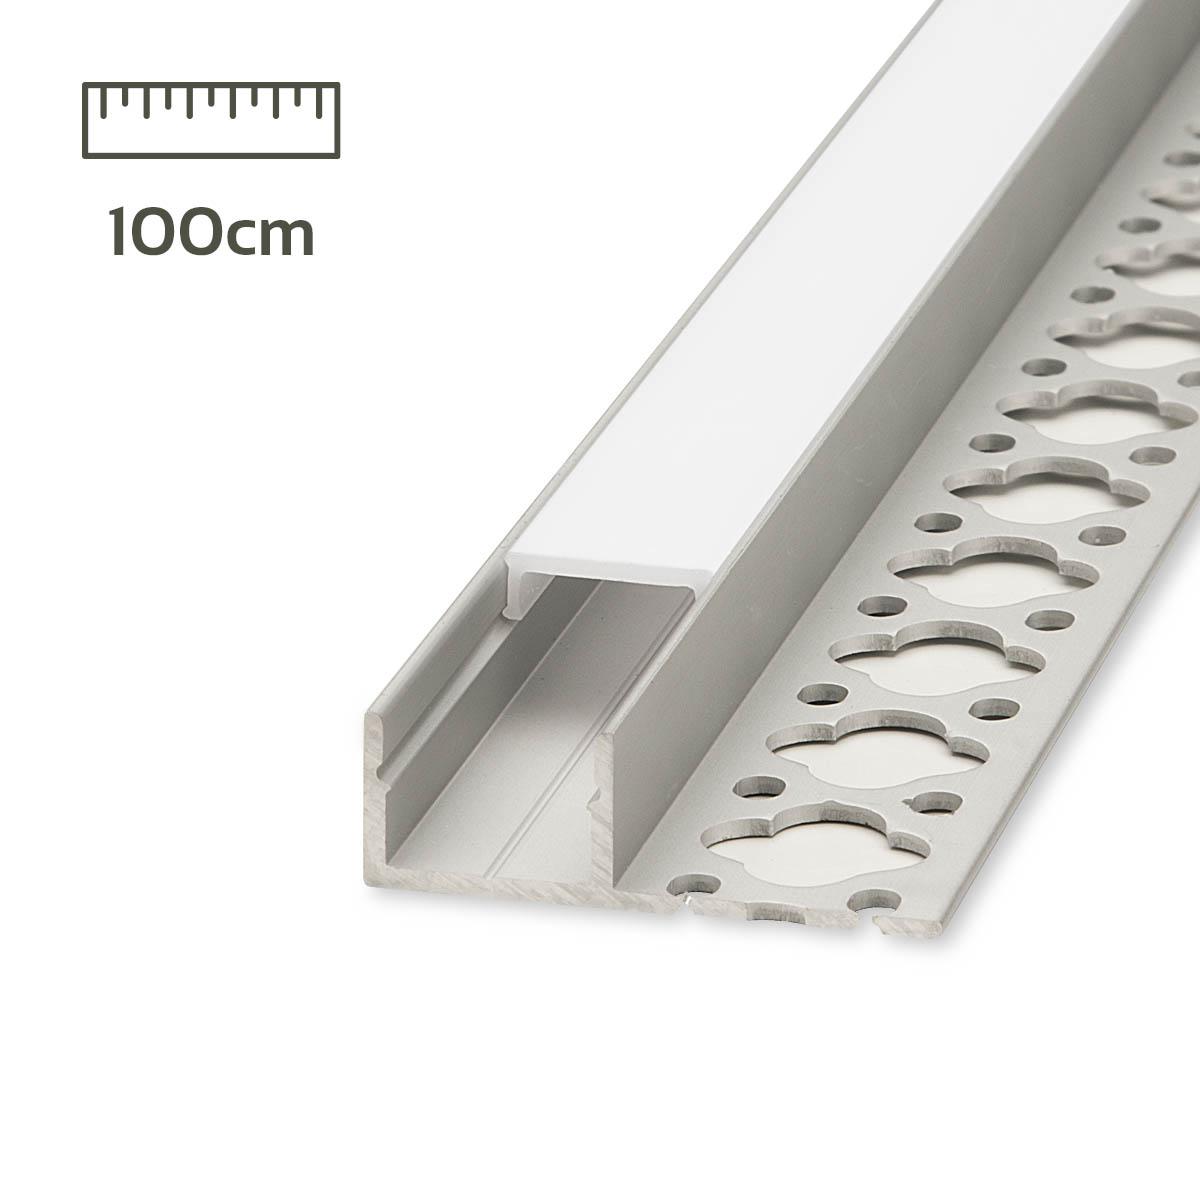 LED Aluminium Profil 10 x 1m LED Strips/Band bis 12 mm inkl. Leisten LIAOINTEC U-Form LED Aluminium Profil mit Weiß Milchige Abdeckung Endkappen und Montageklammer für LED-Streifen 